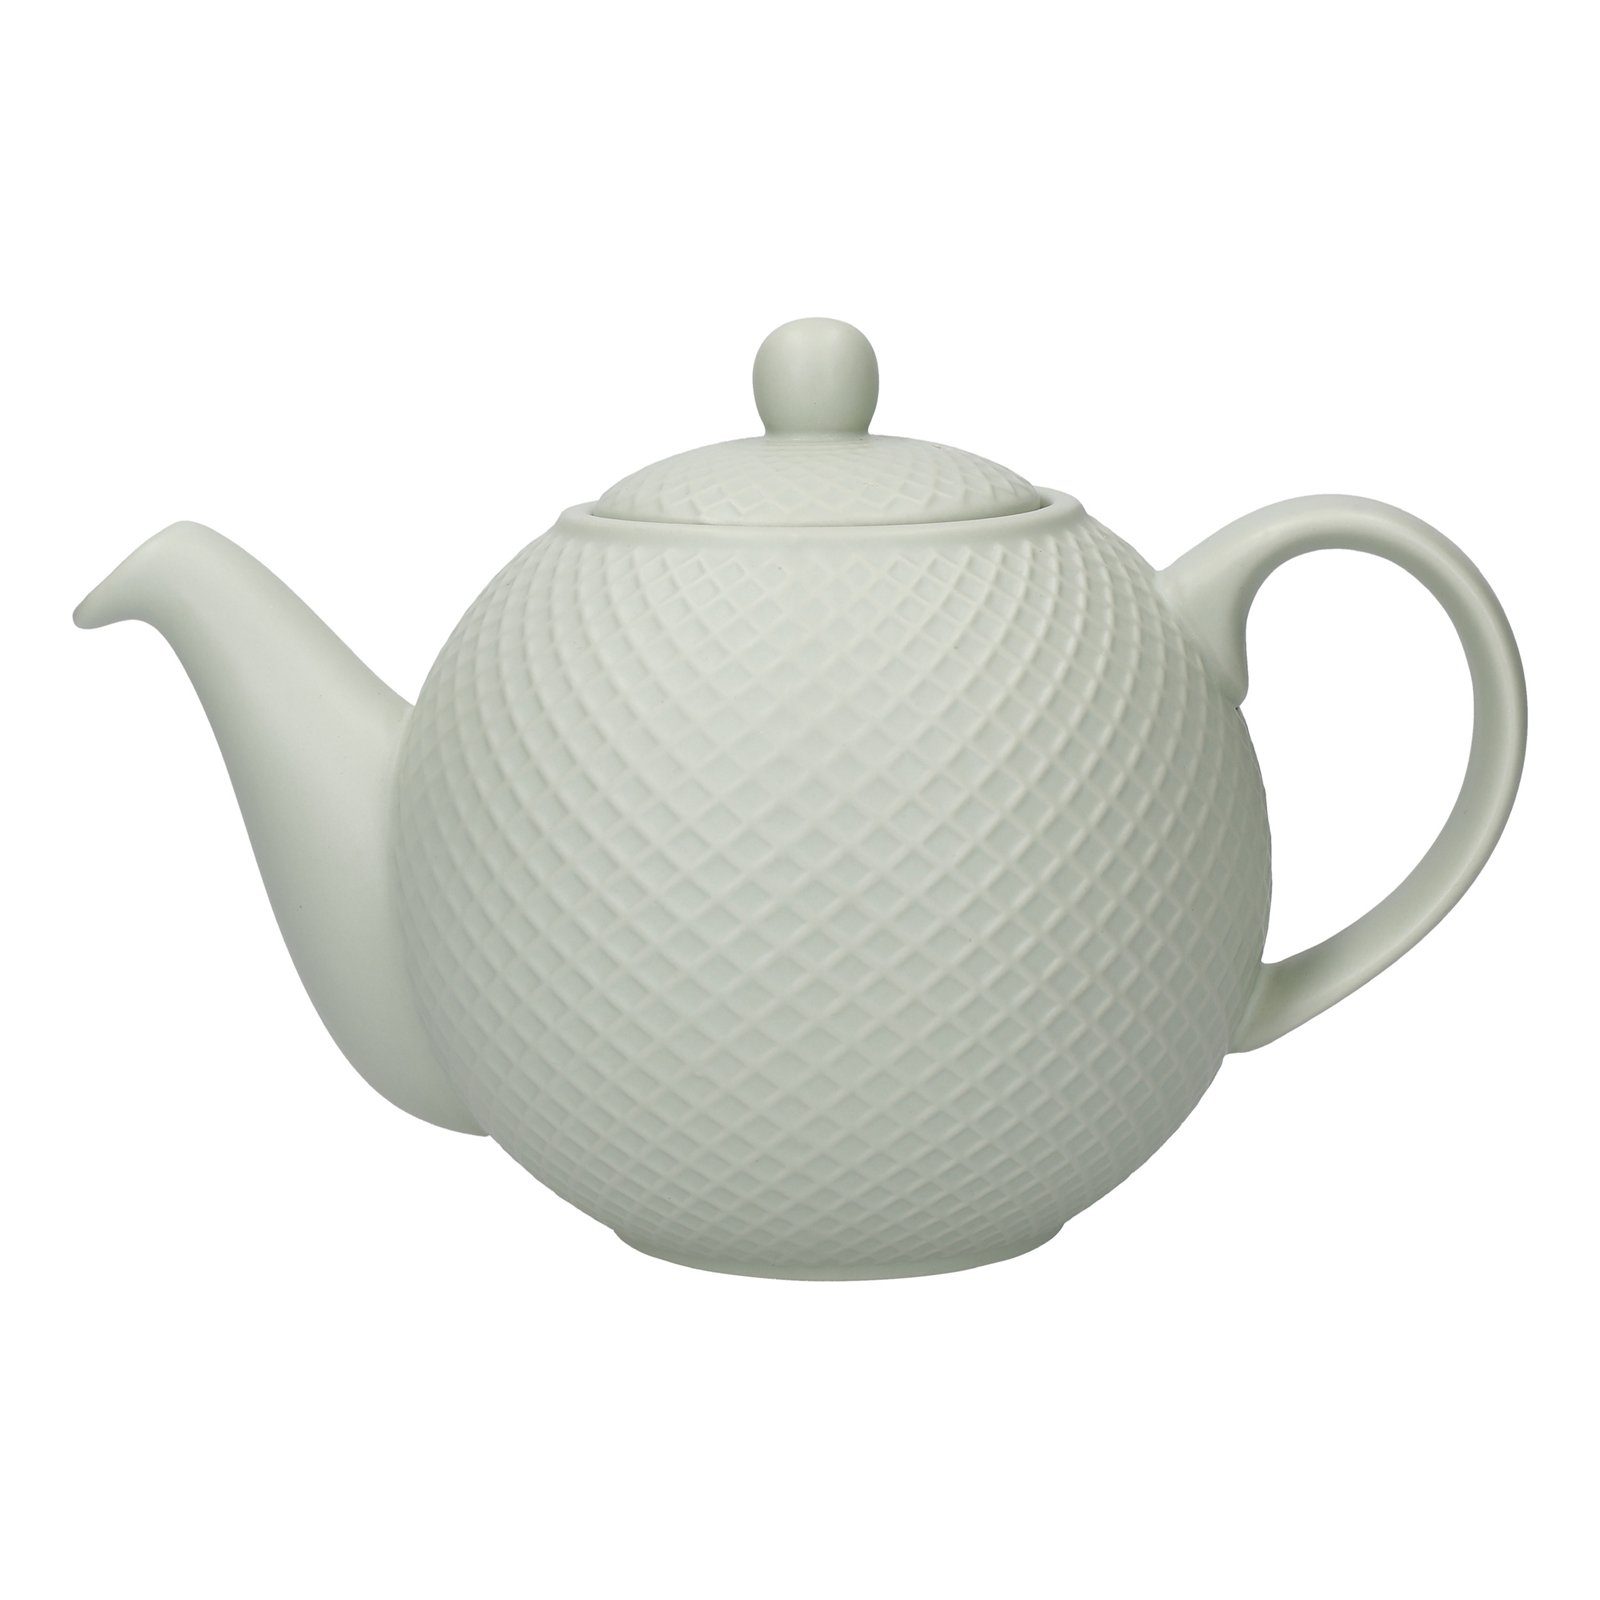 Neuetischkultur Teekanne Teekanne mit Keramikfilter für 4 Tassen 900 ml, 0.9 l, (Stück, 1 Teekanne mit Filter und Deckel), Teebereiter